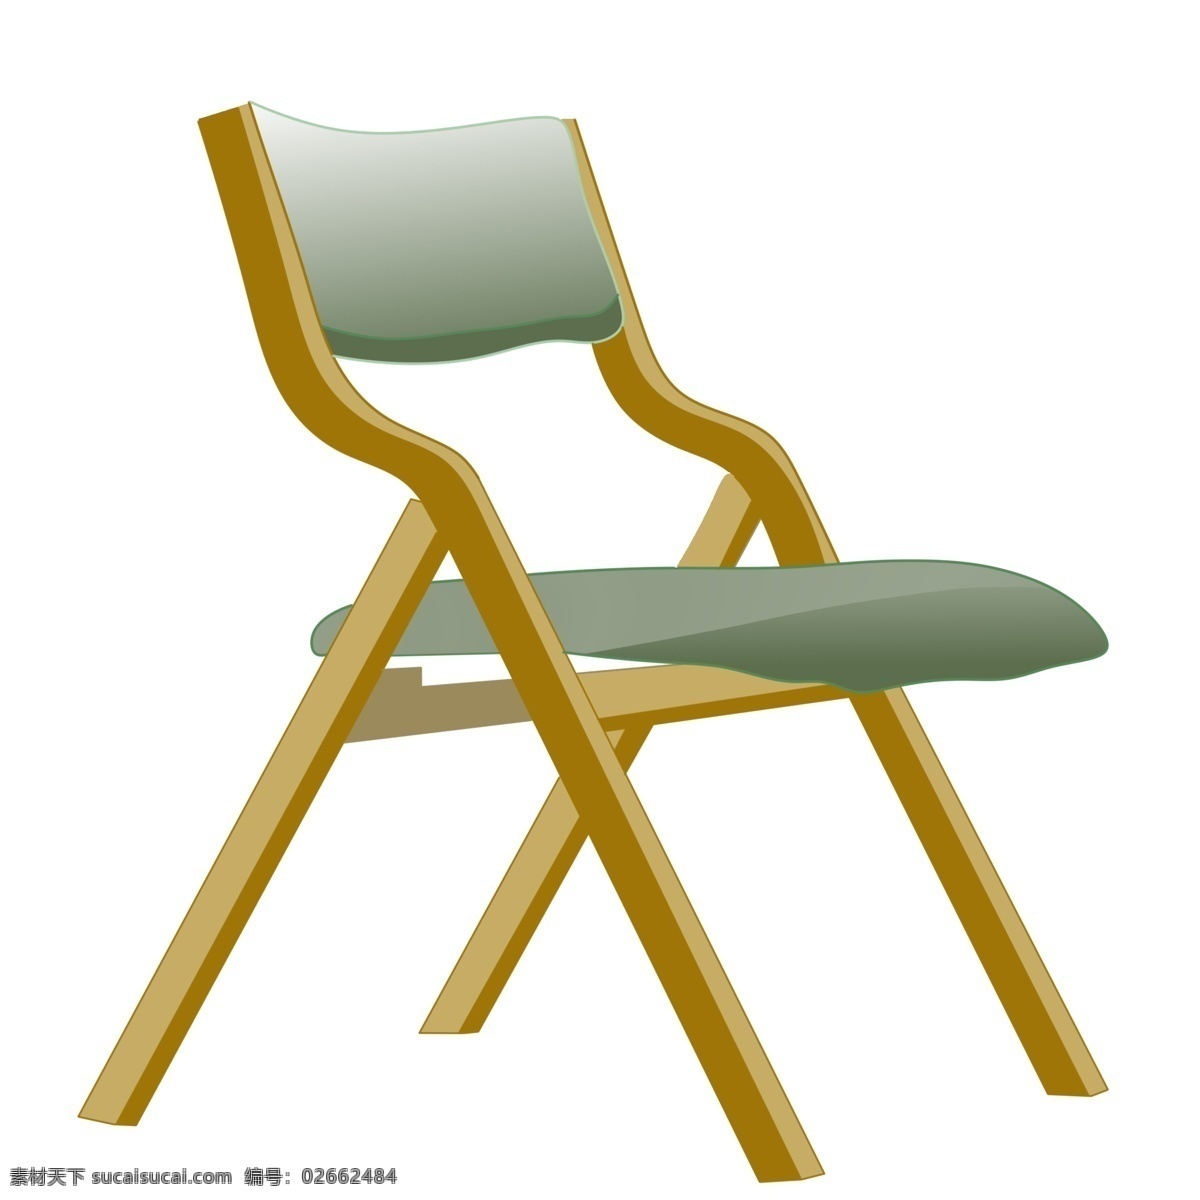 皮质 椅子 家具 插画 灰色的椅子 卡通插画 家具插画 椅子插画 家具椅子 座位凳子 皮质的椅子